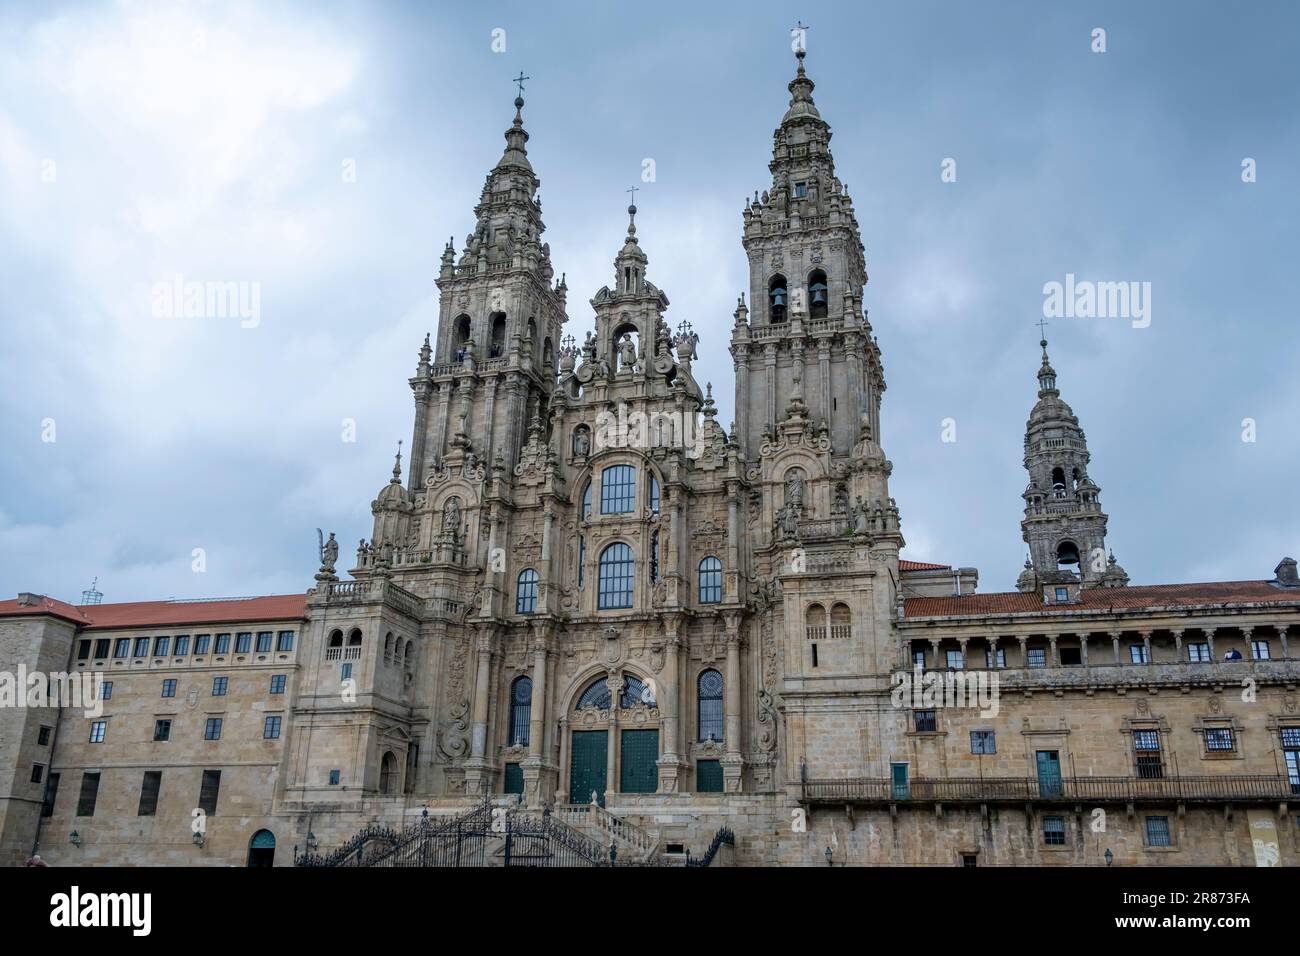 Cathedral of Santiago de Compostela, La Coruna, Galicia, Spain. Cloudy day. Stock Photo